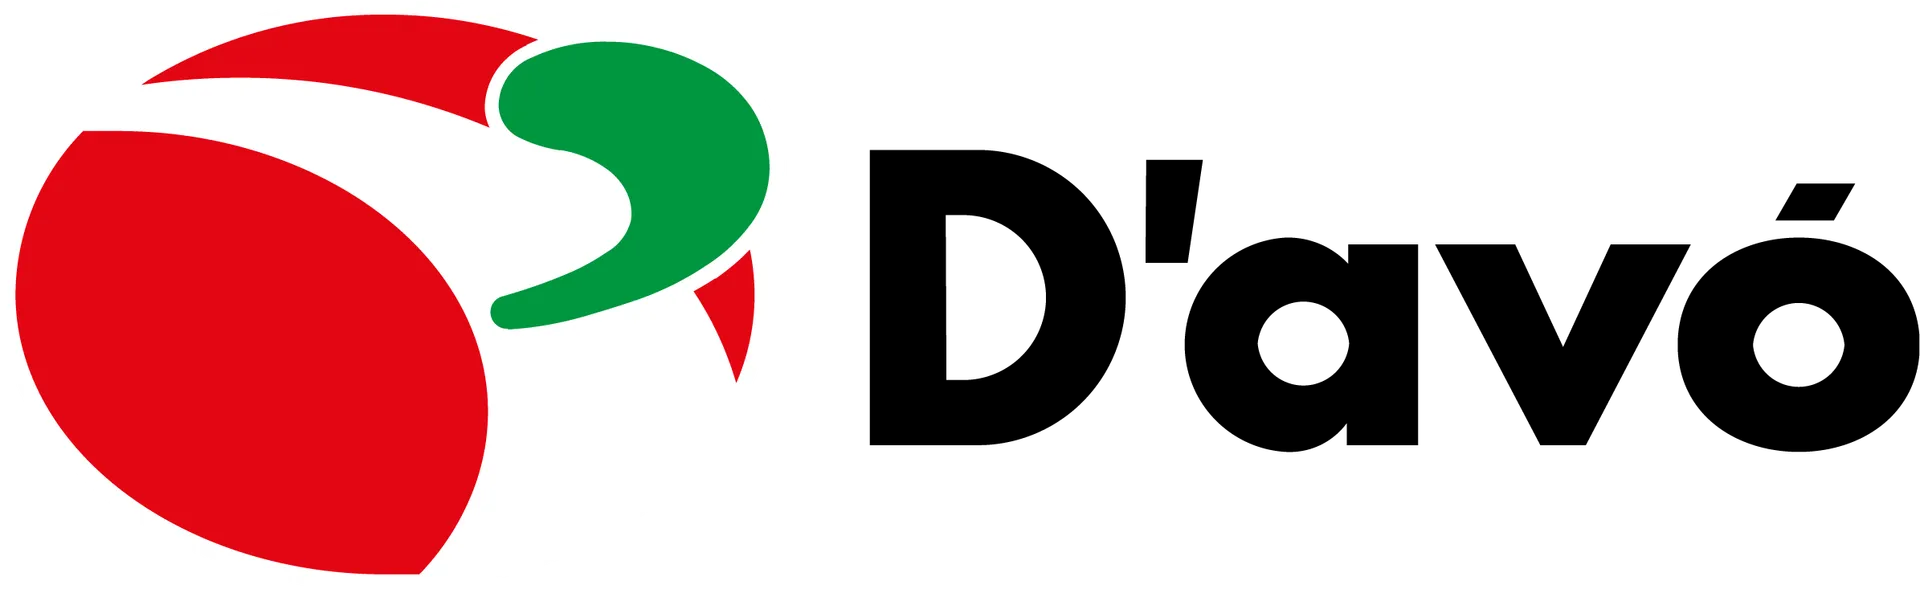 D'AVÓ SUPERMERCADO logo